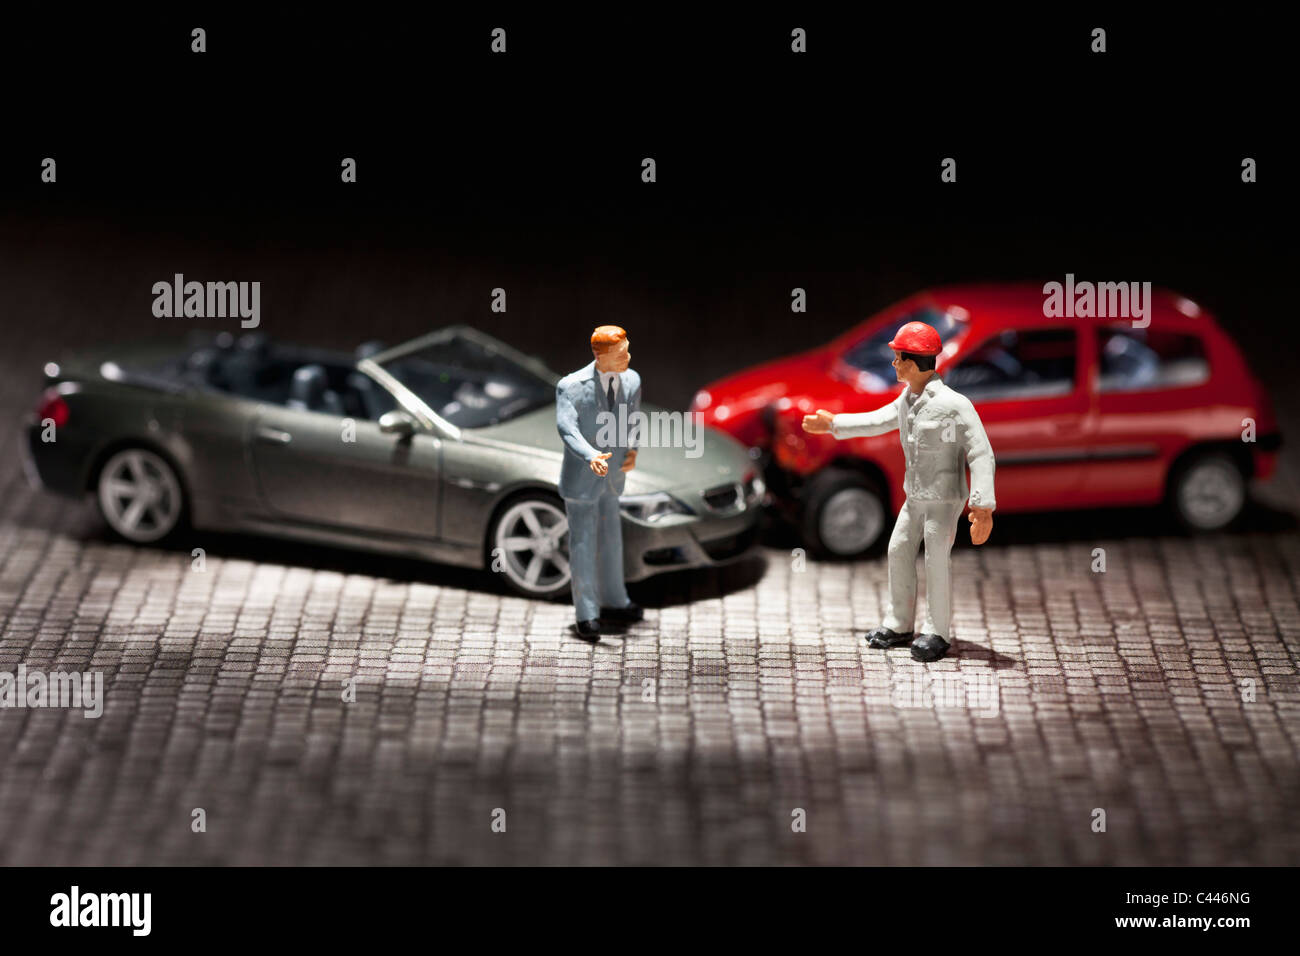 Figurine miniature deux hommes sur leurs voitures miniatures crashed Banque D'Images